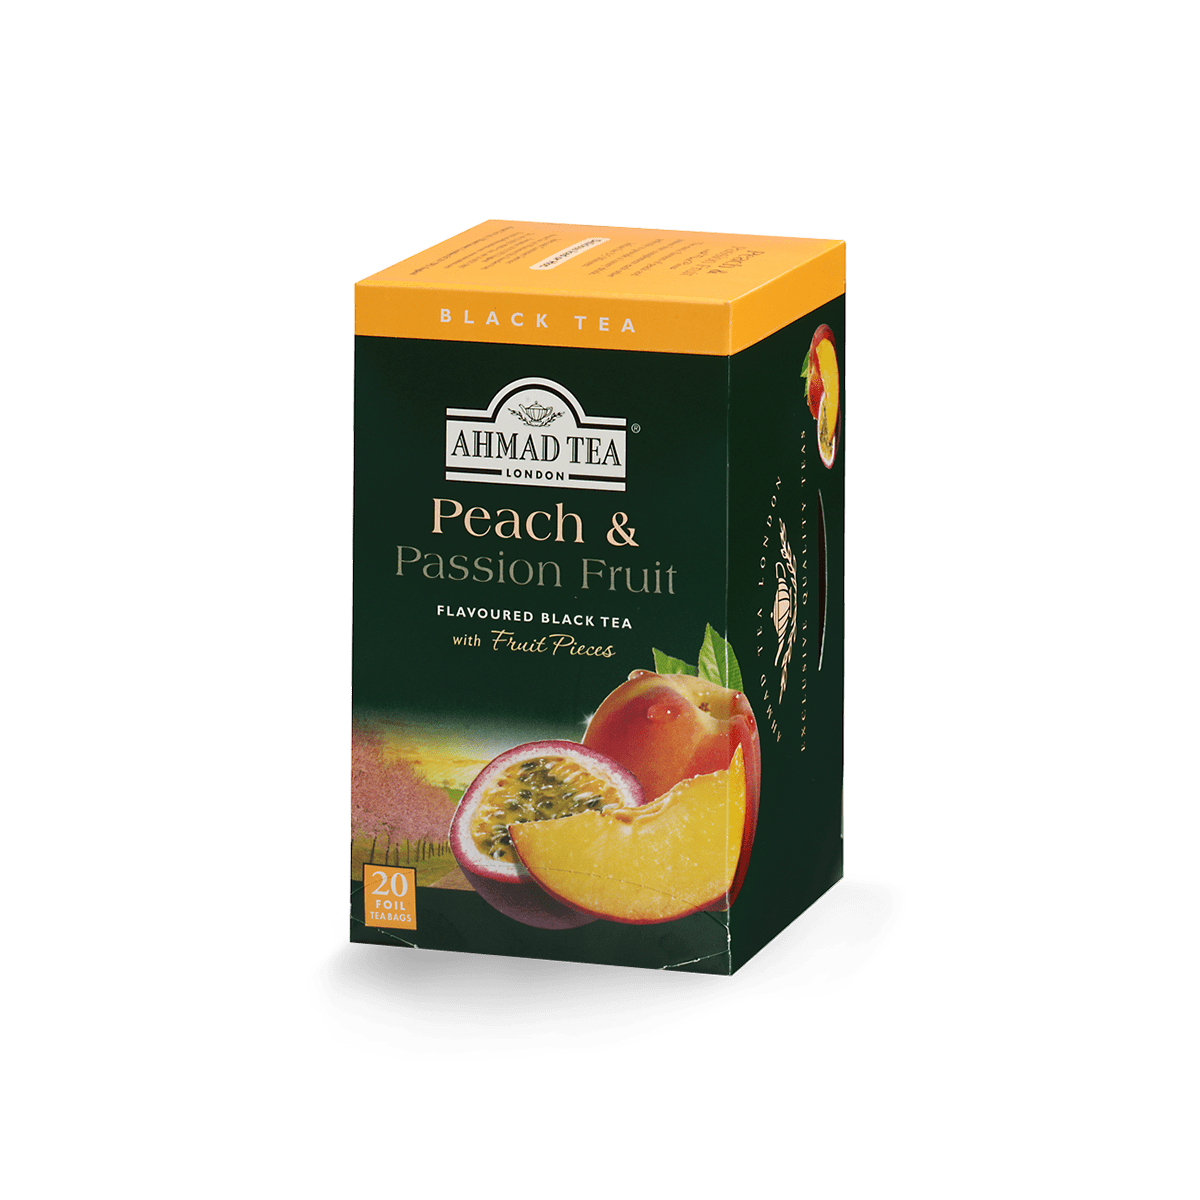 Ahmad Tea's Apricot Sunrise Flavored Black Tea Bags - 20 count